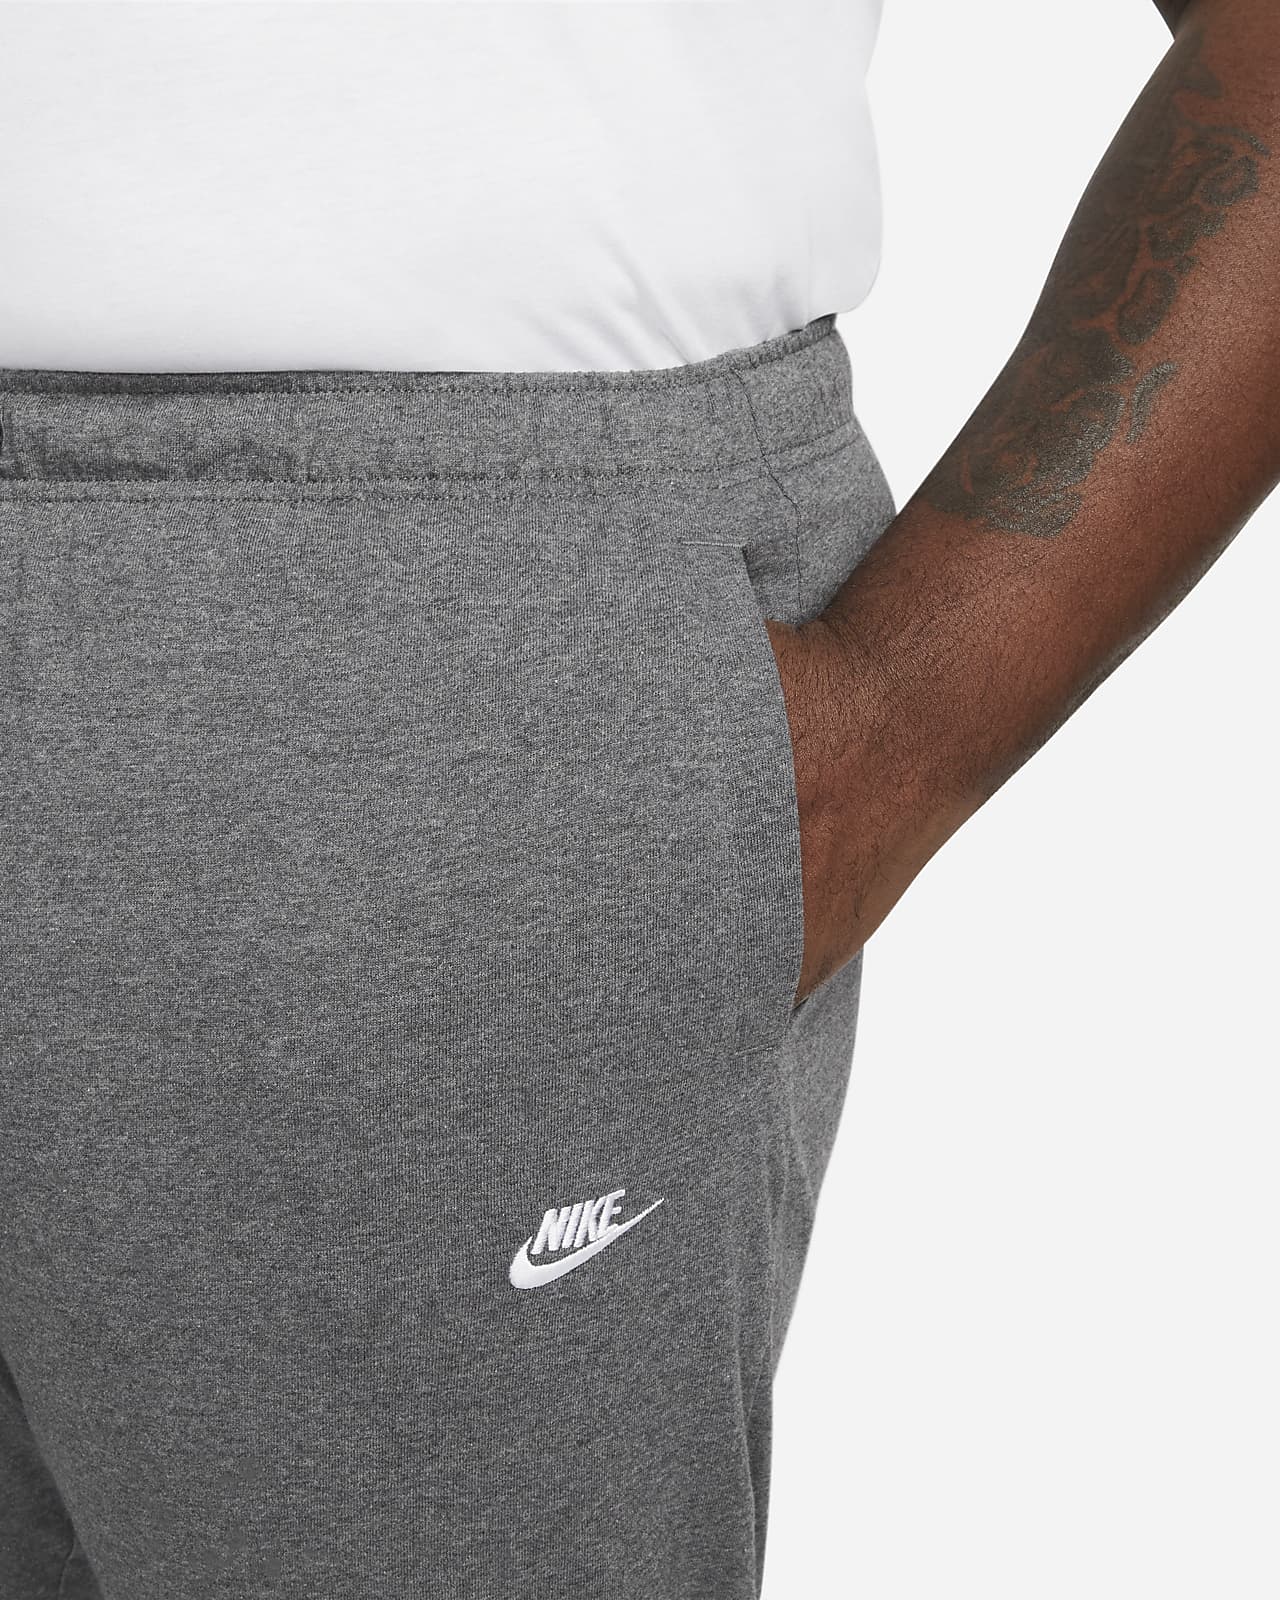 Nike Sportswear Club Fleece Lightweight Grey Jersey Pants Mens Size XL  BV2766  Full On Cinema